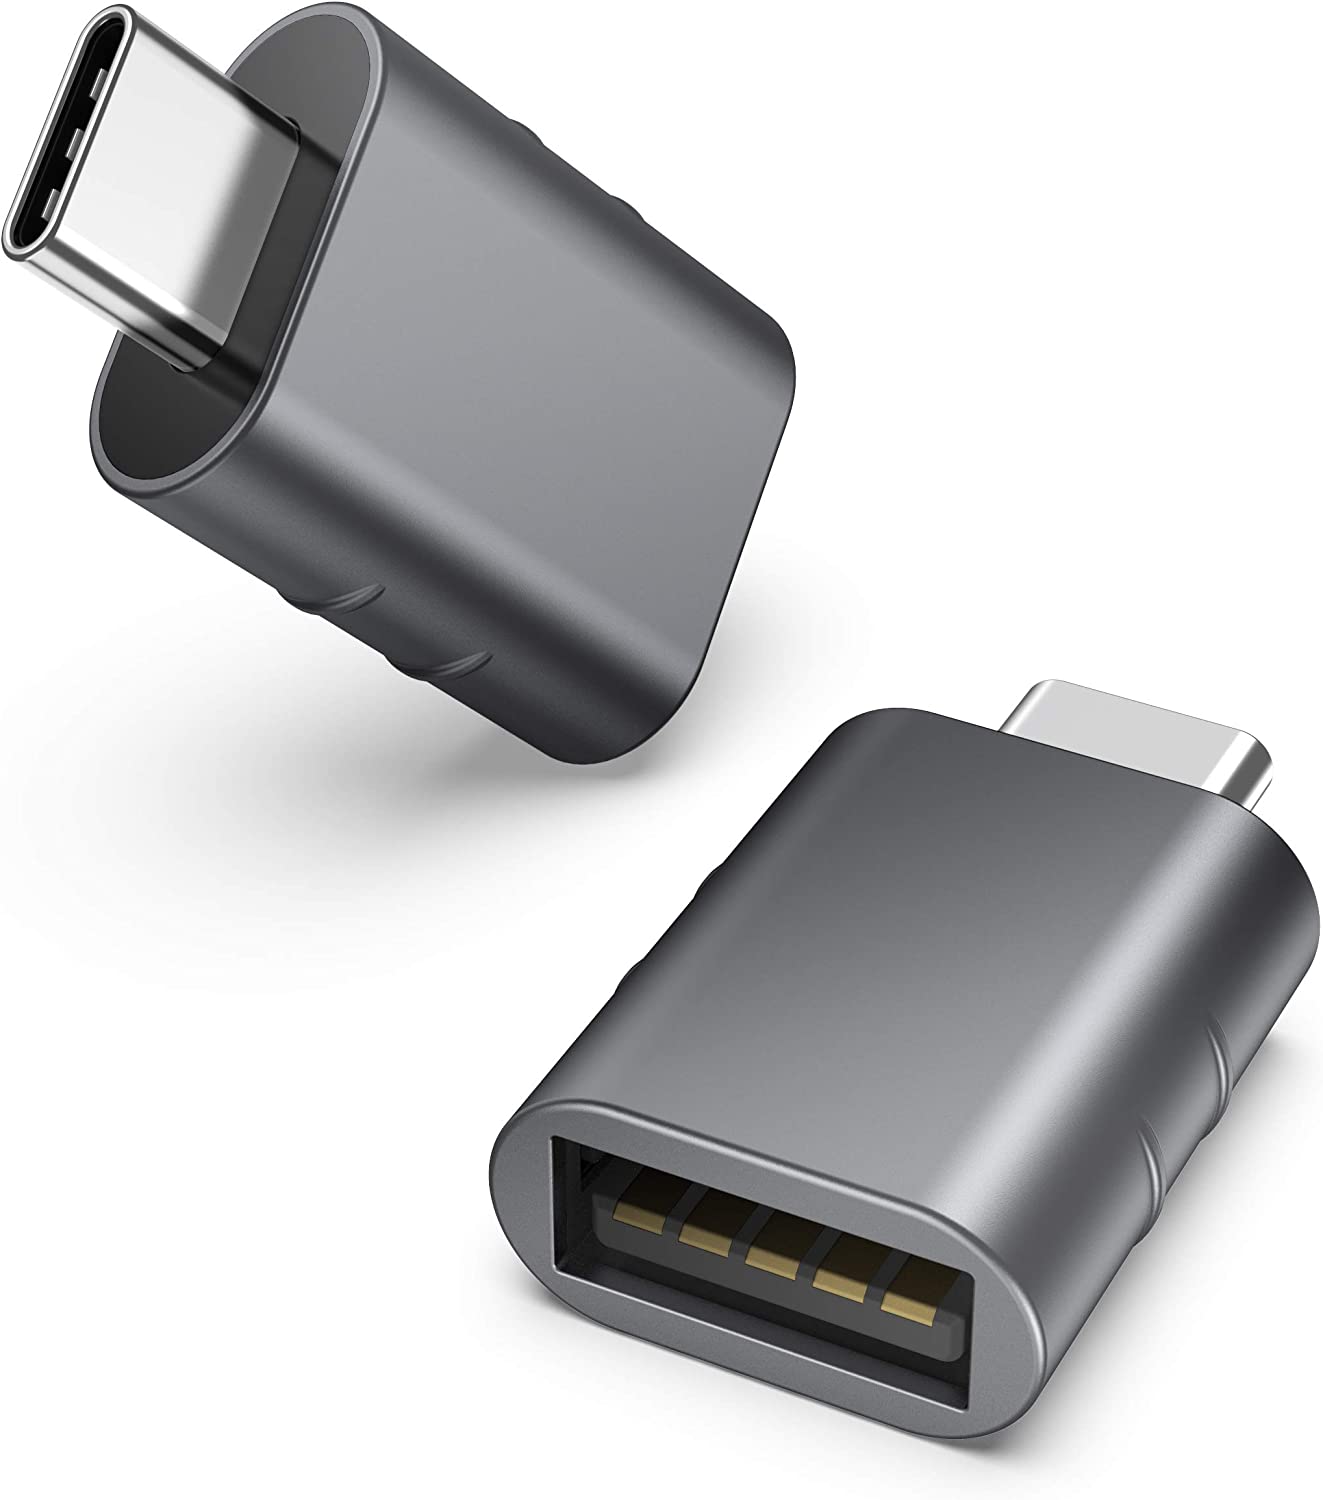 Adattatore accendisigari Tecmate O-106 USB RAPIDO UNIVERSALE - Accessori  high tech 